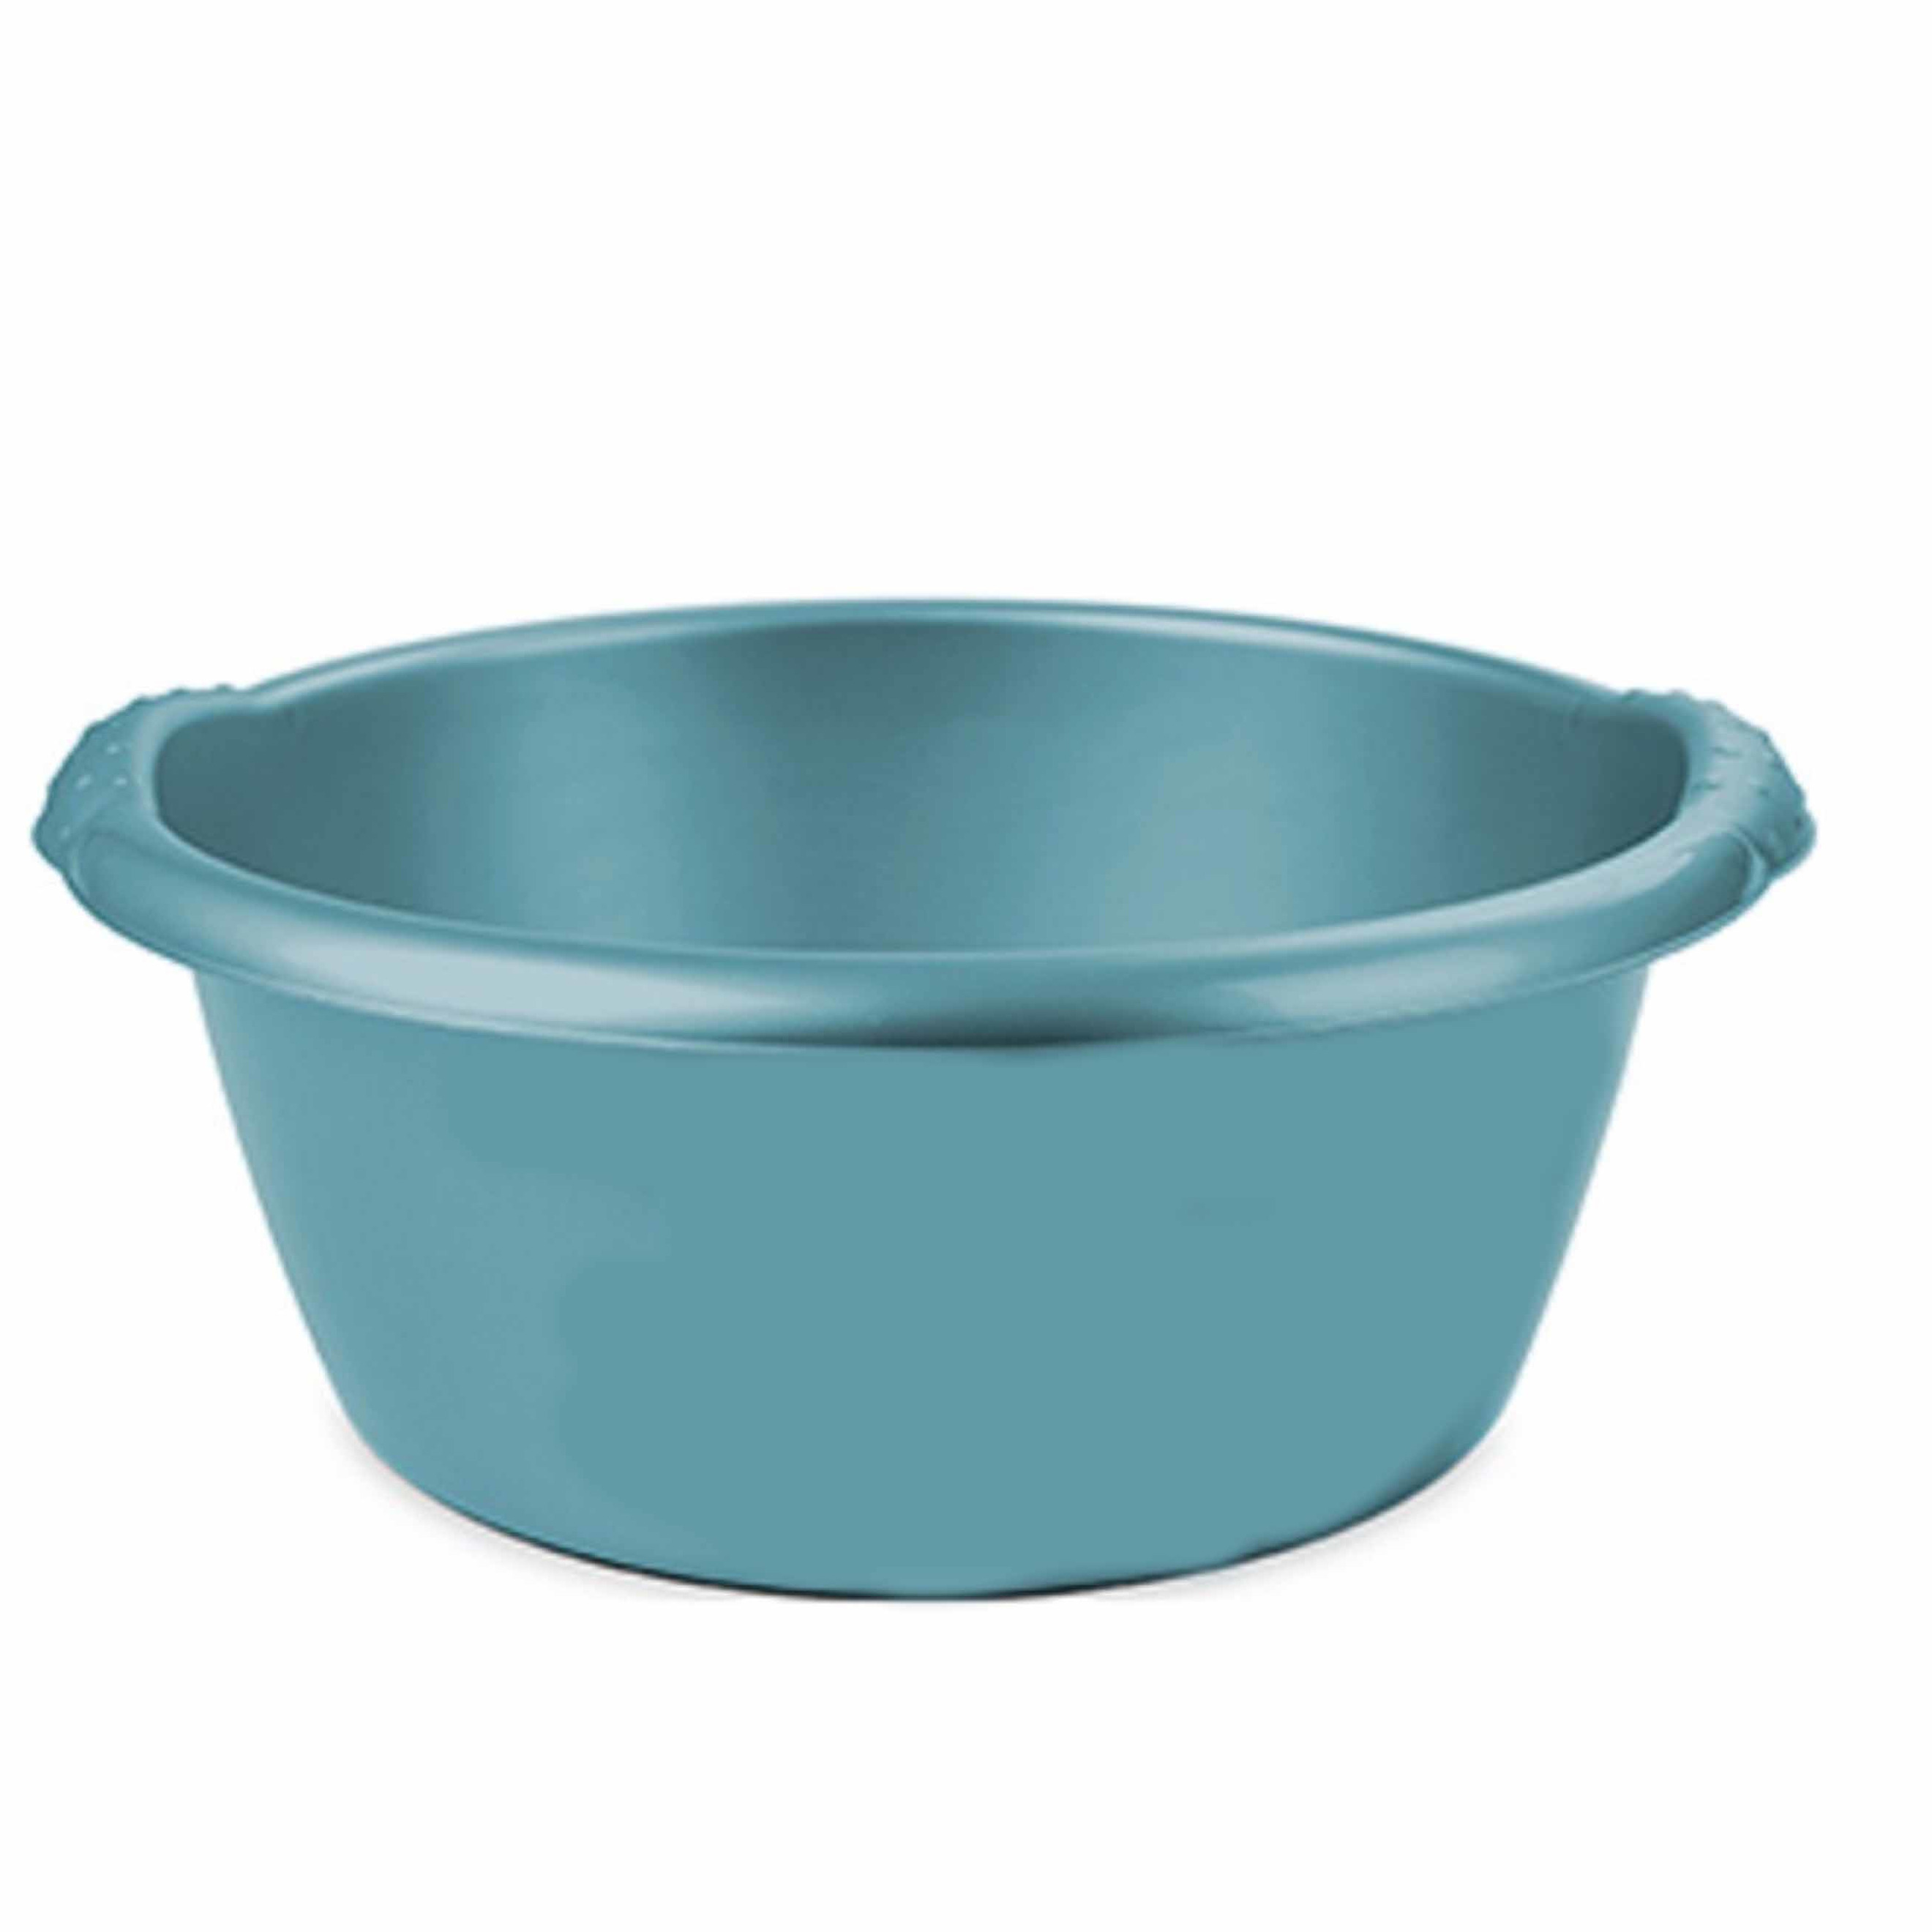 Turquoise blauwe afwasbak-afwasteil rond 15 liter 42 cm